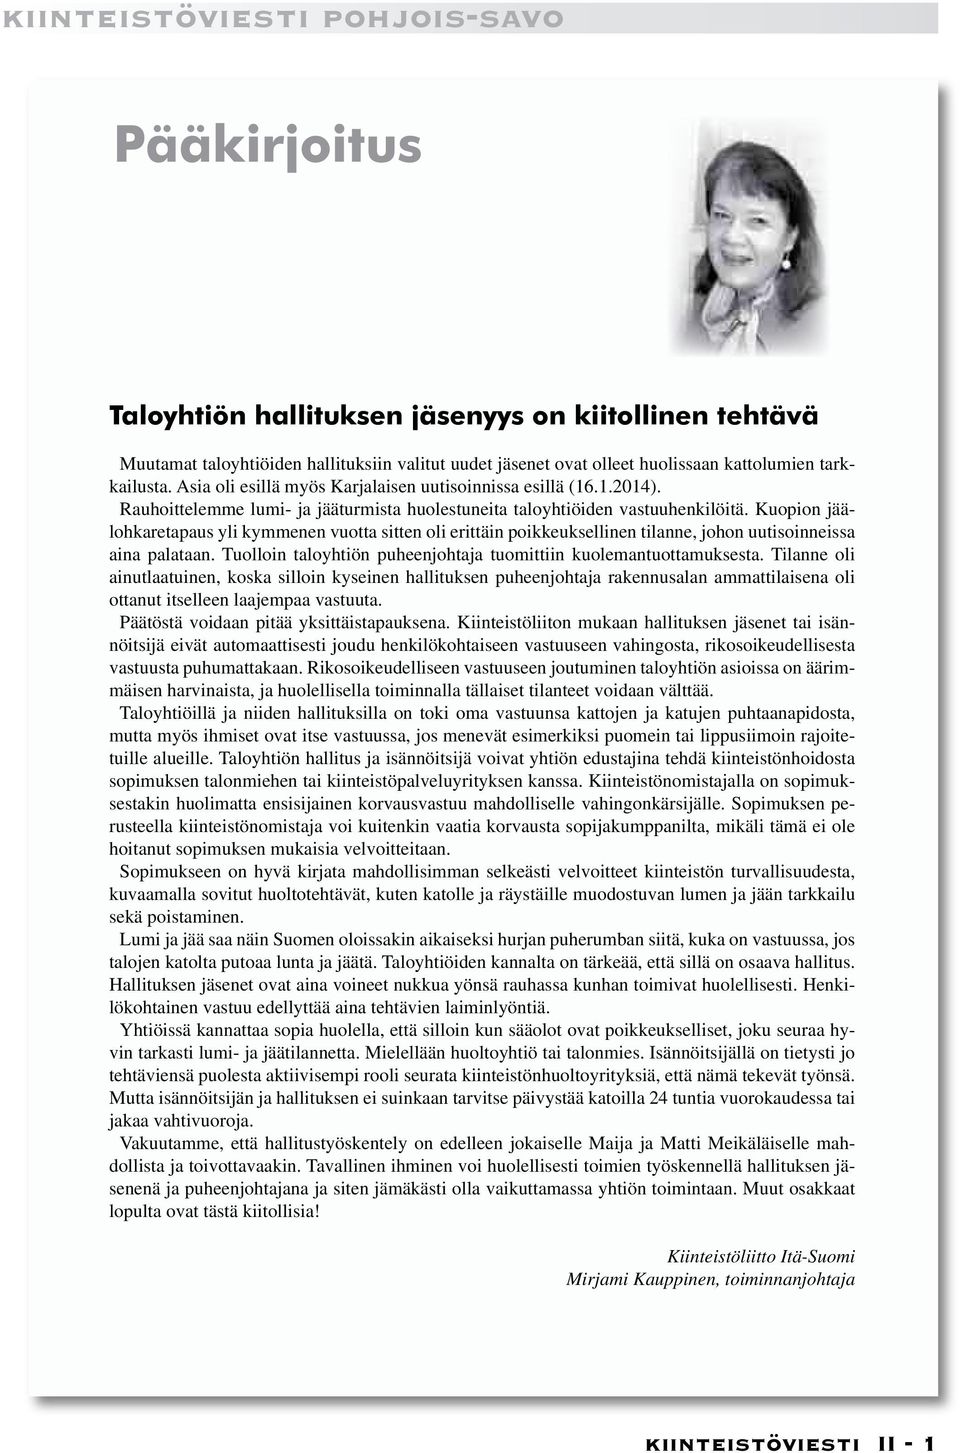 Kuopion jäälohkaretapaus yli kymmenen vuotta sitten oli erittäin poikkeuksellinen tilanne, johon uutisoinneissa aina palataan. Tuolloin taloyhtiön puheenjohtaja tuomittiin kuolemantuottamuksesta.